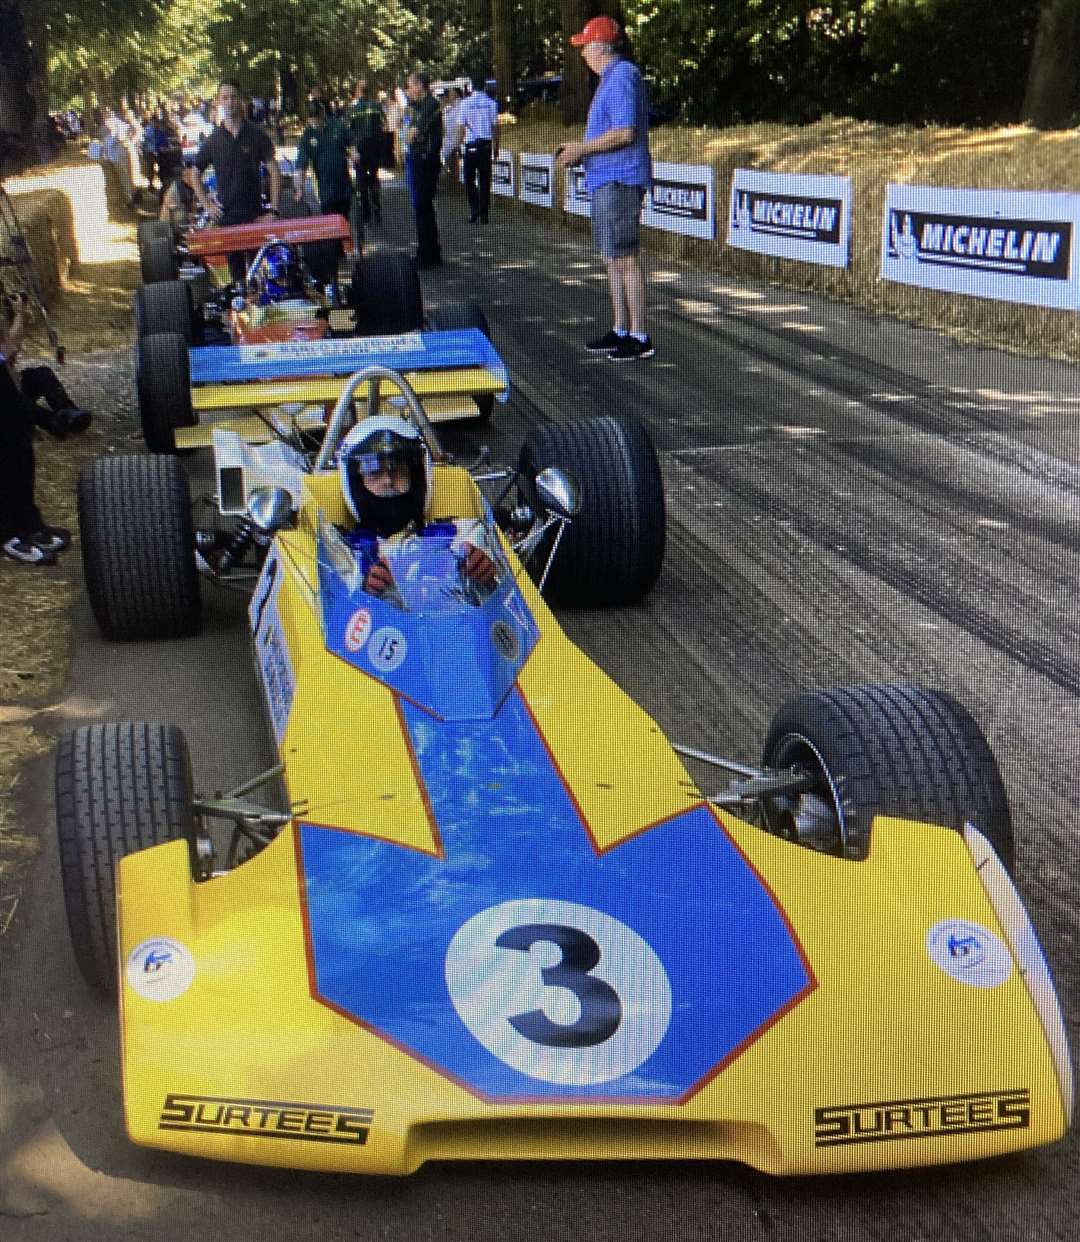 John Surtees' car